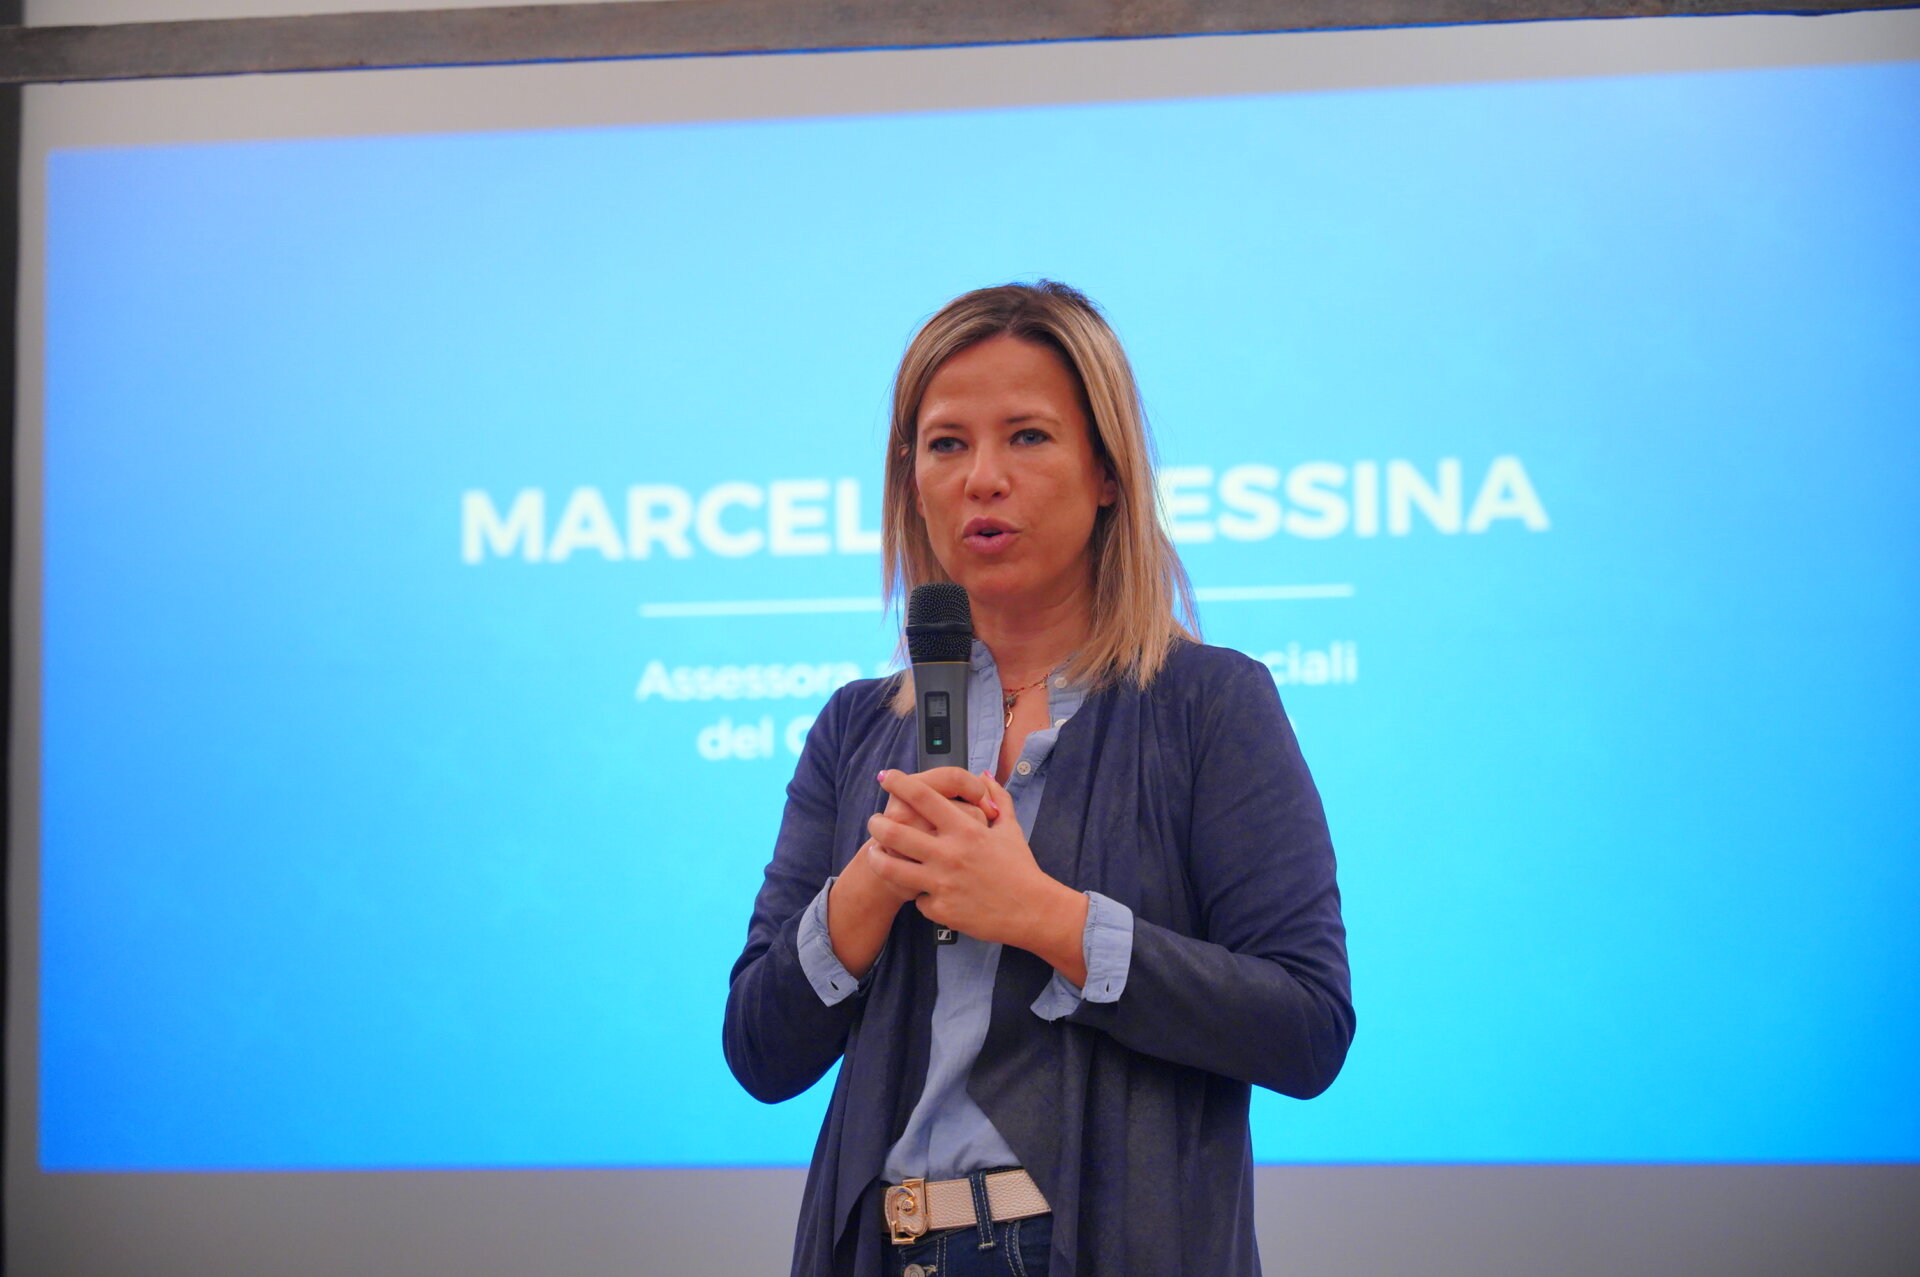 Marcella Messina